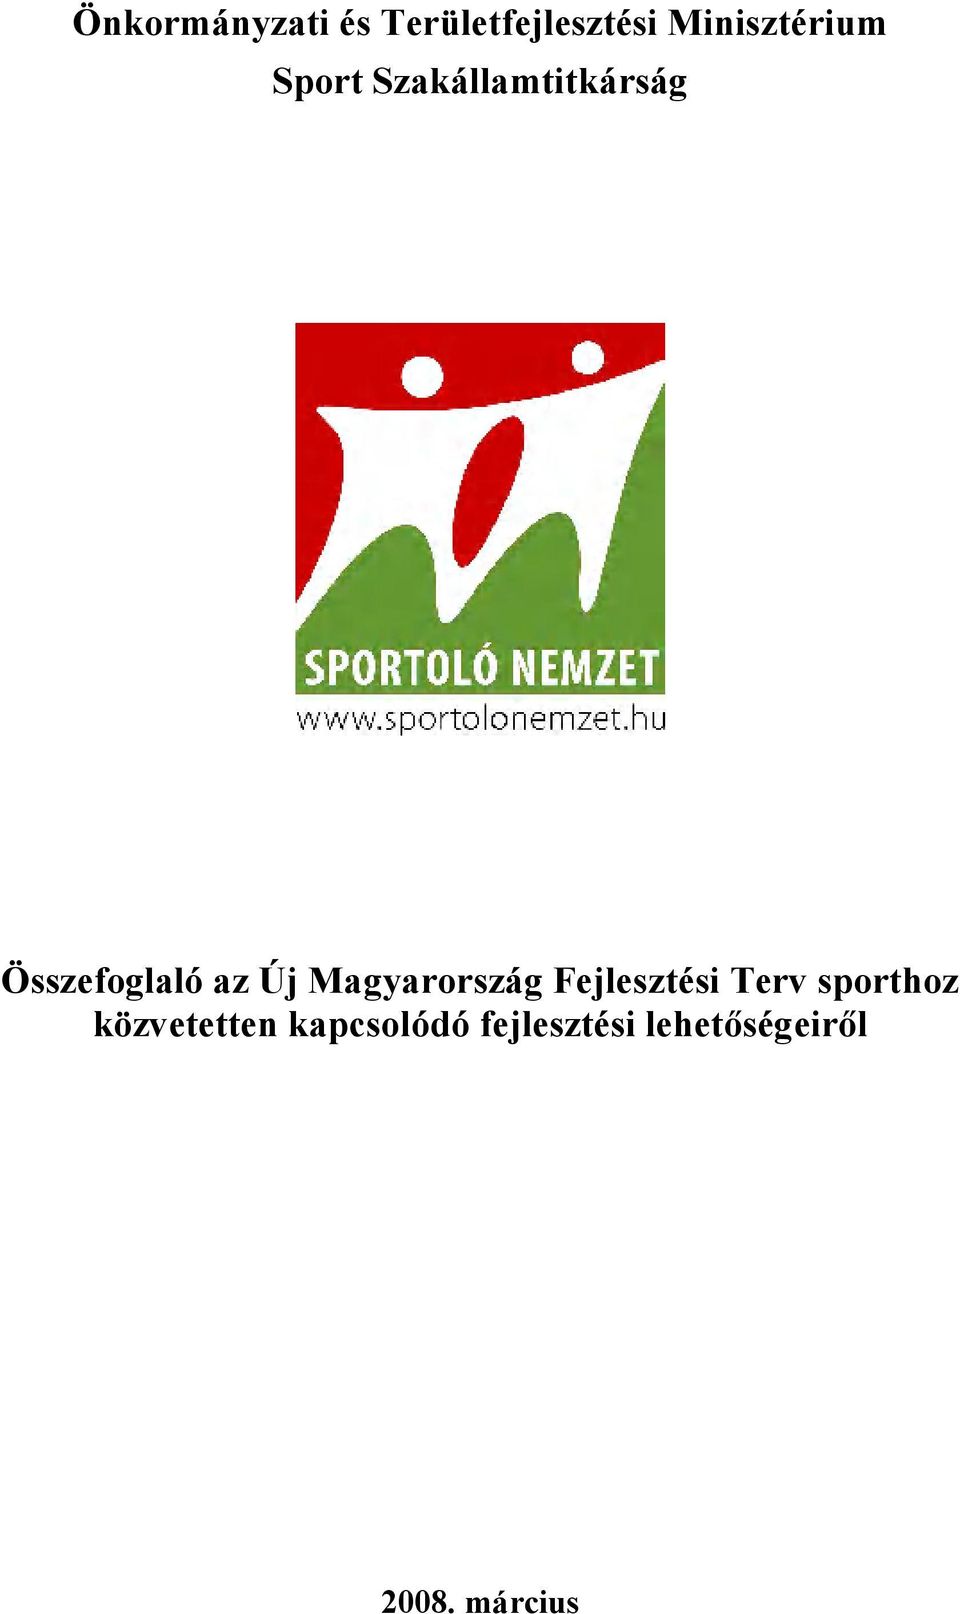 Magyarország Fejlesztési Terv sporthoz